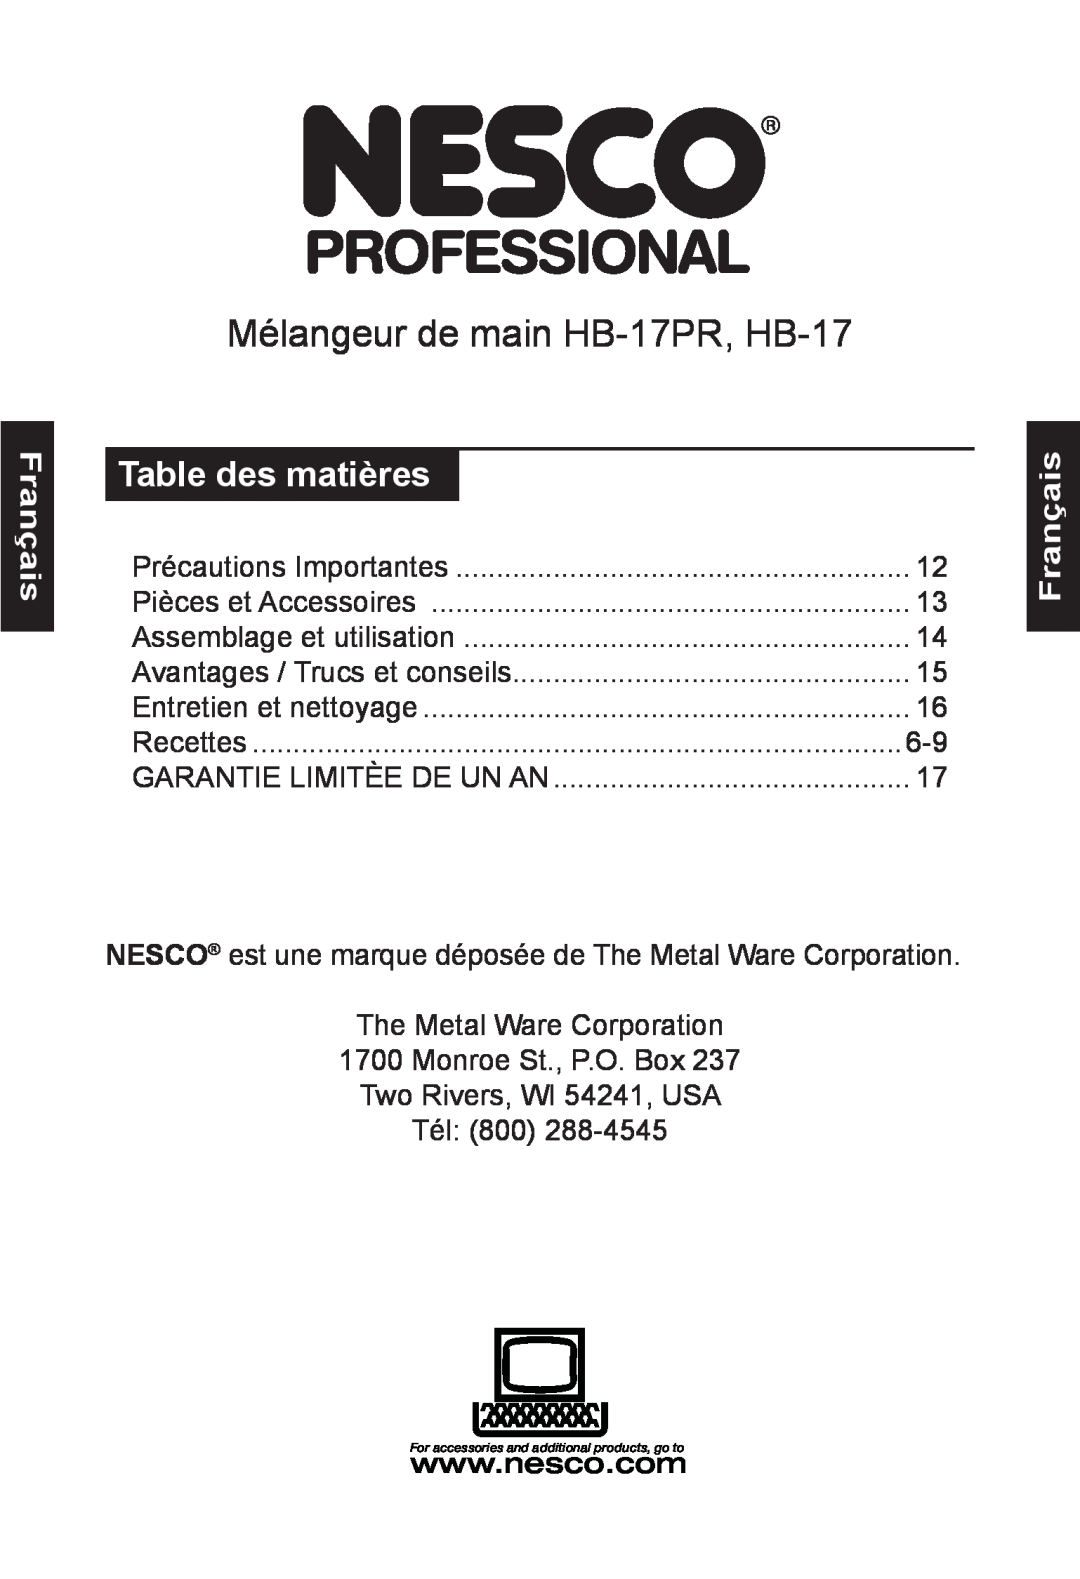 Nesco manual Français, Table des matières, Mélangeur de main HB-17PR, HB-17 